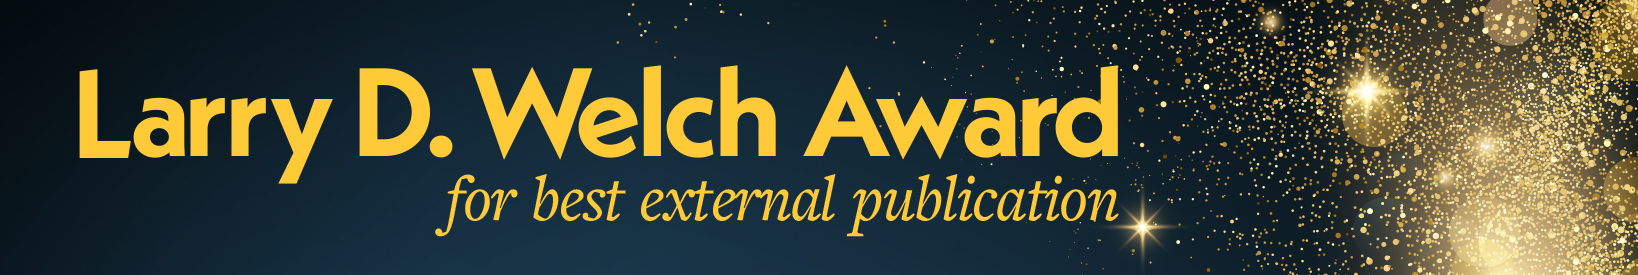 Larry D. Welch Award for best external publication